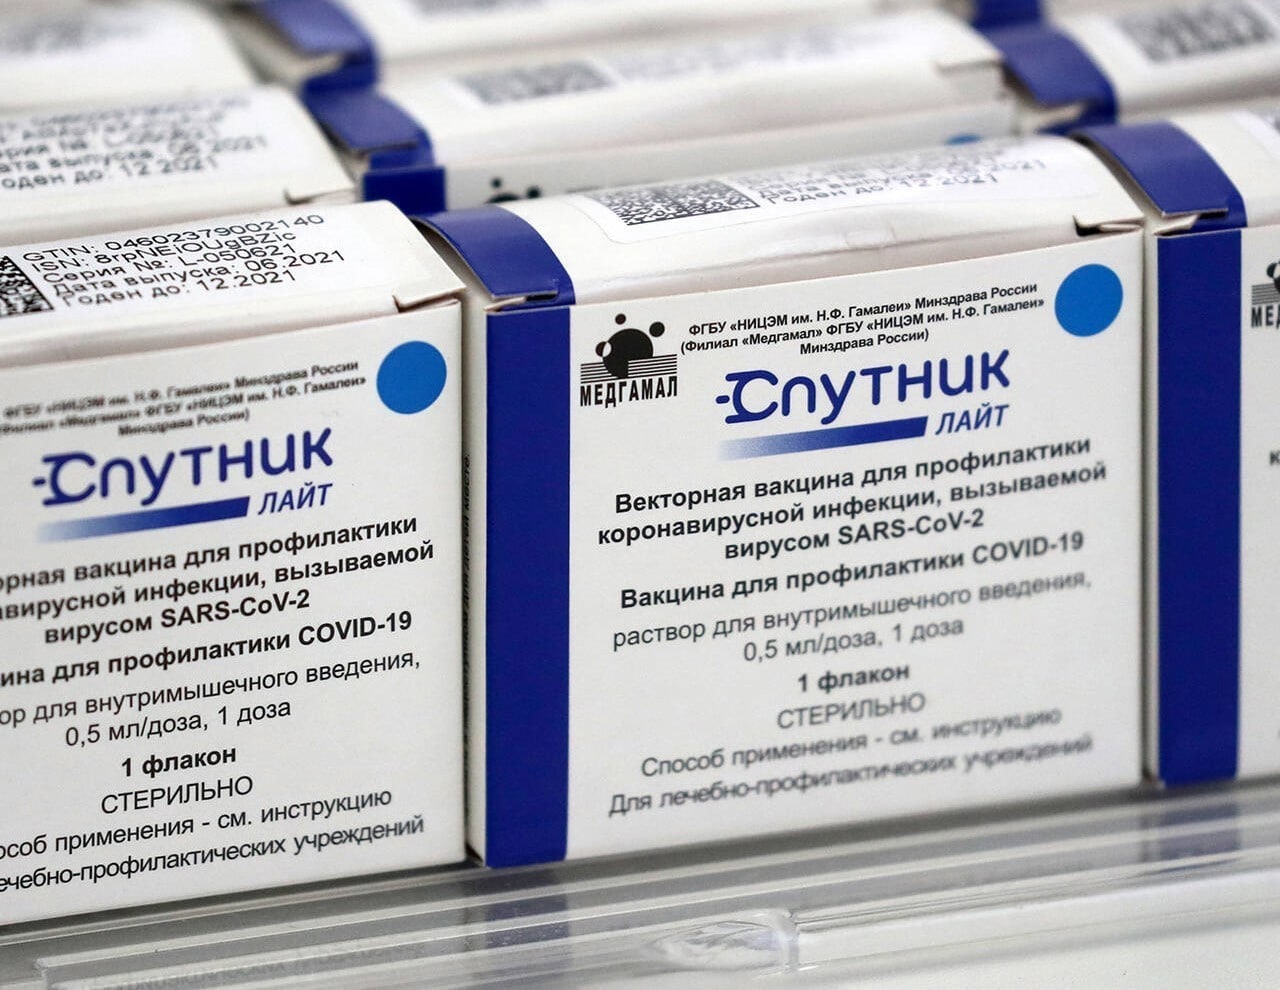 Коронавирус (Covid-19), Томские новости, коронавирус прививки уколы заболевание пандемия поставить уколы Еще более 55 тыс. доз вакцины от коронавируса поступило в Томскую область